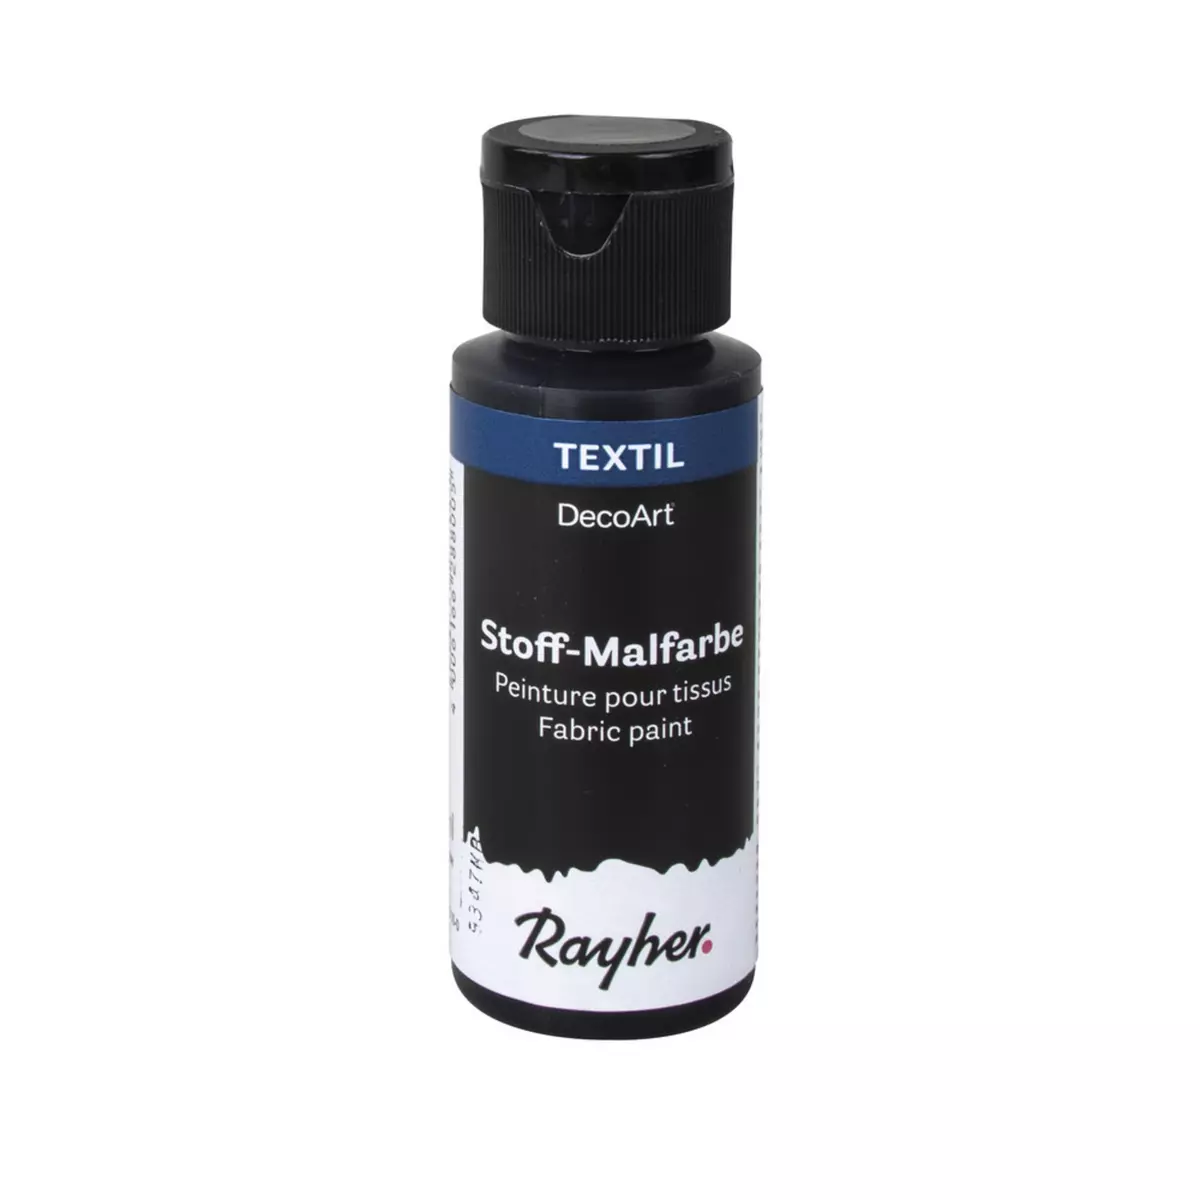 Rayher Peinture pour tissus, noir, flacon 59ml